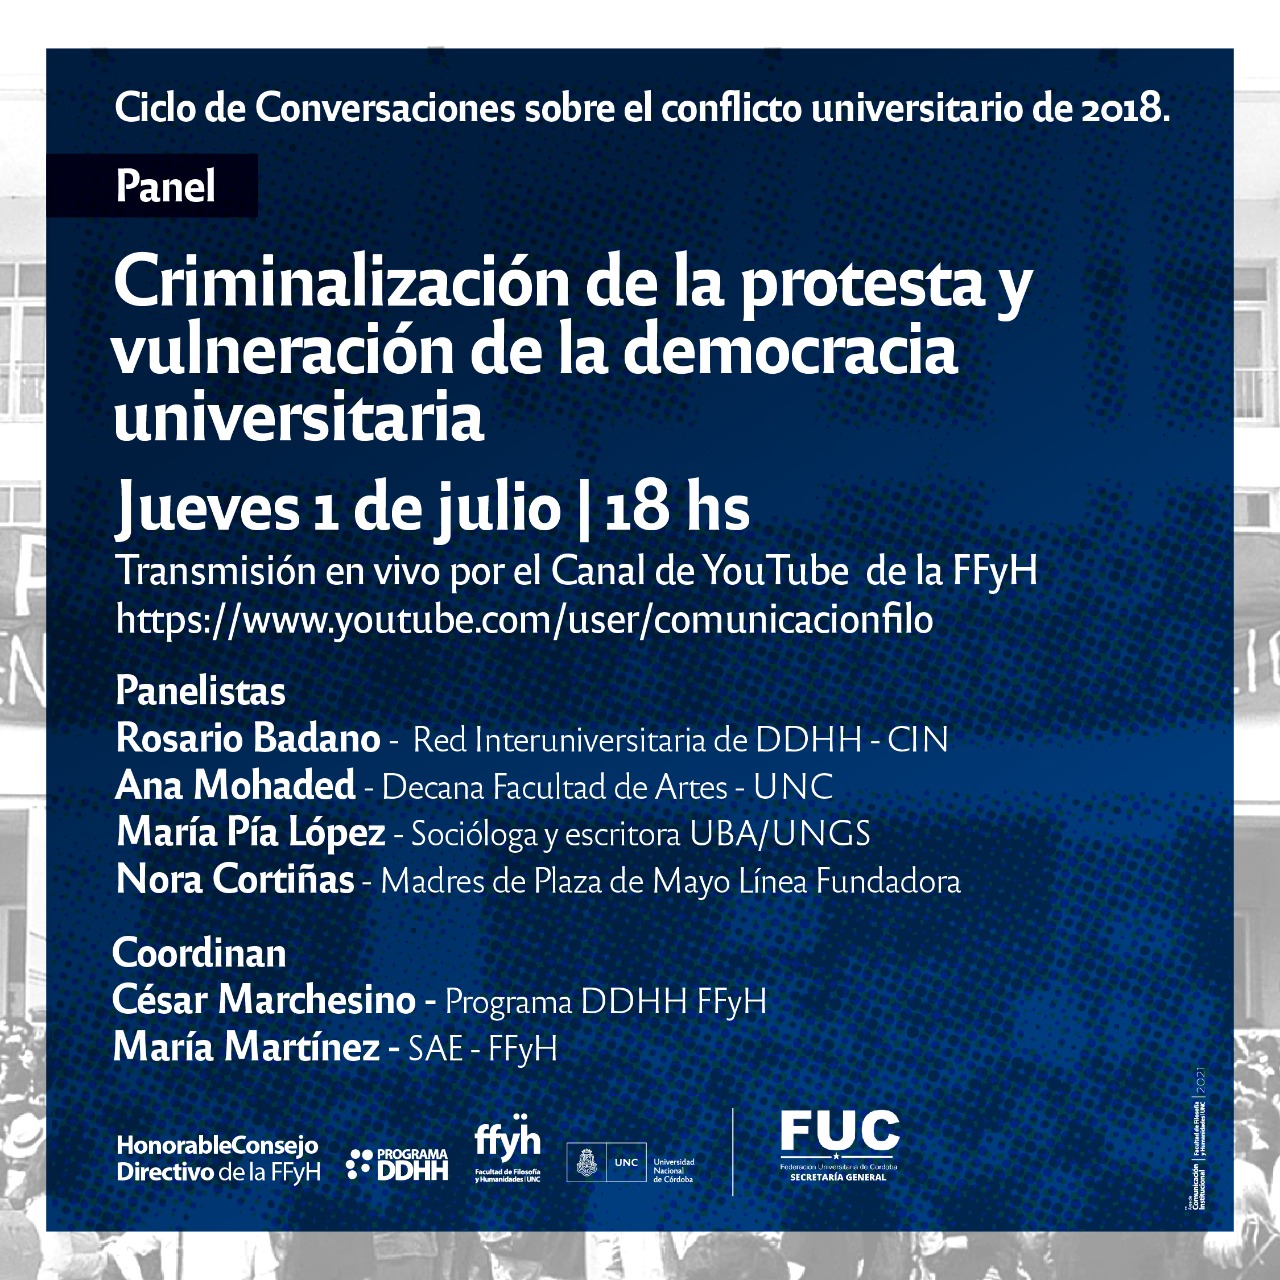 “Criminalización de la protesta y vulneración de la democracia universitaria”